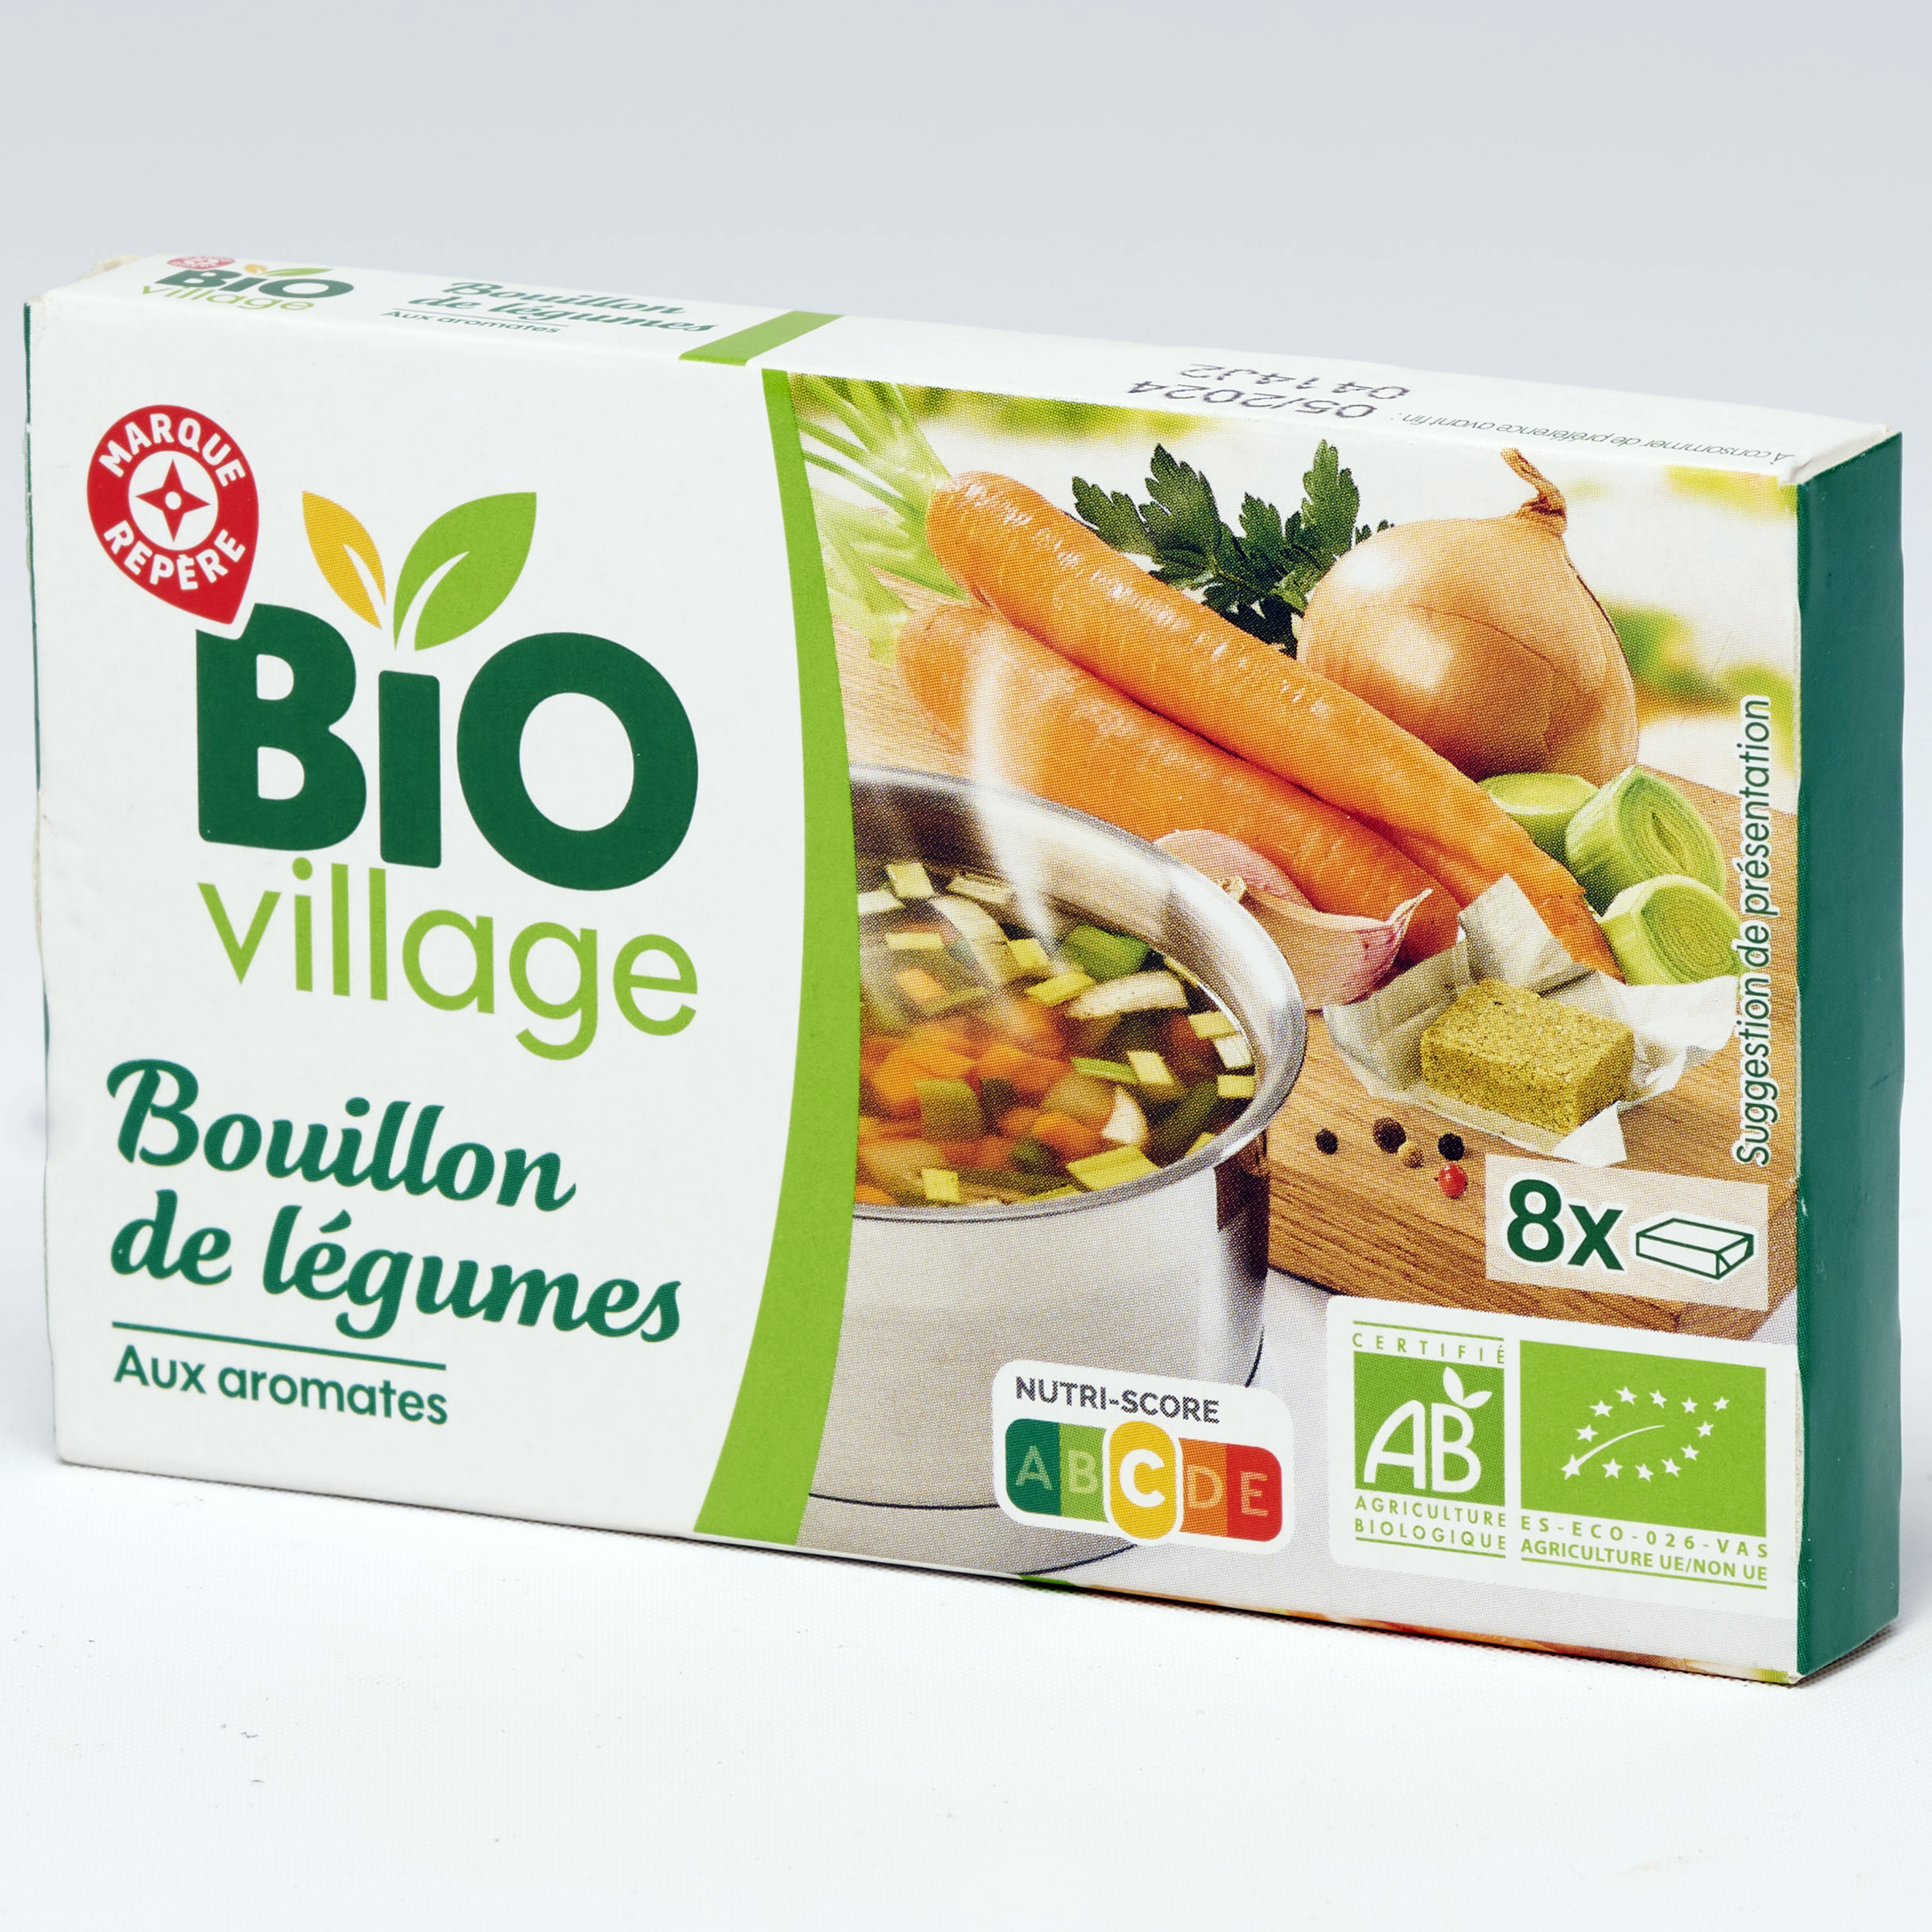 Bio village (E.Leclerc) Bouillon de légumes aux aromates - 